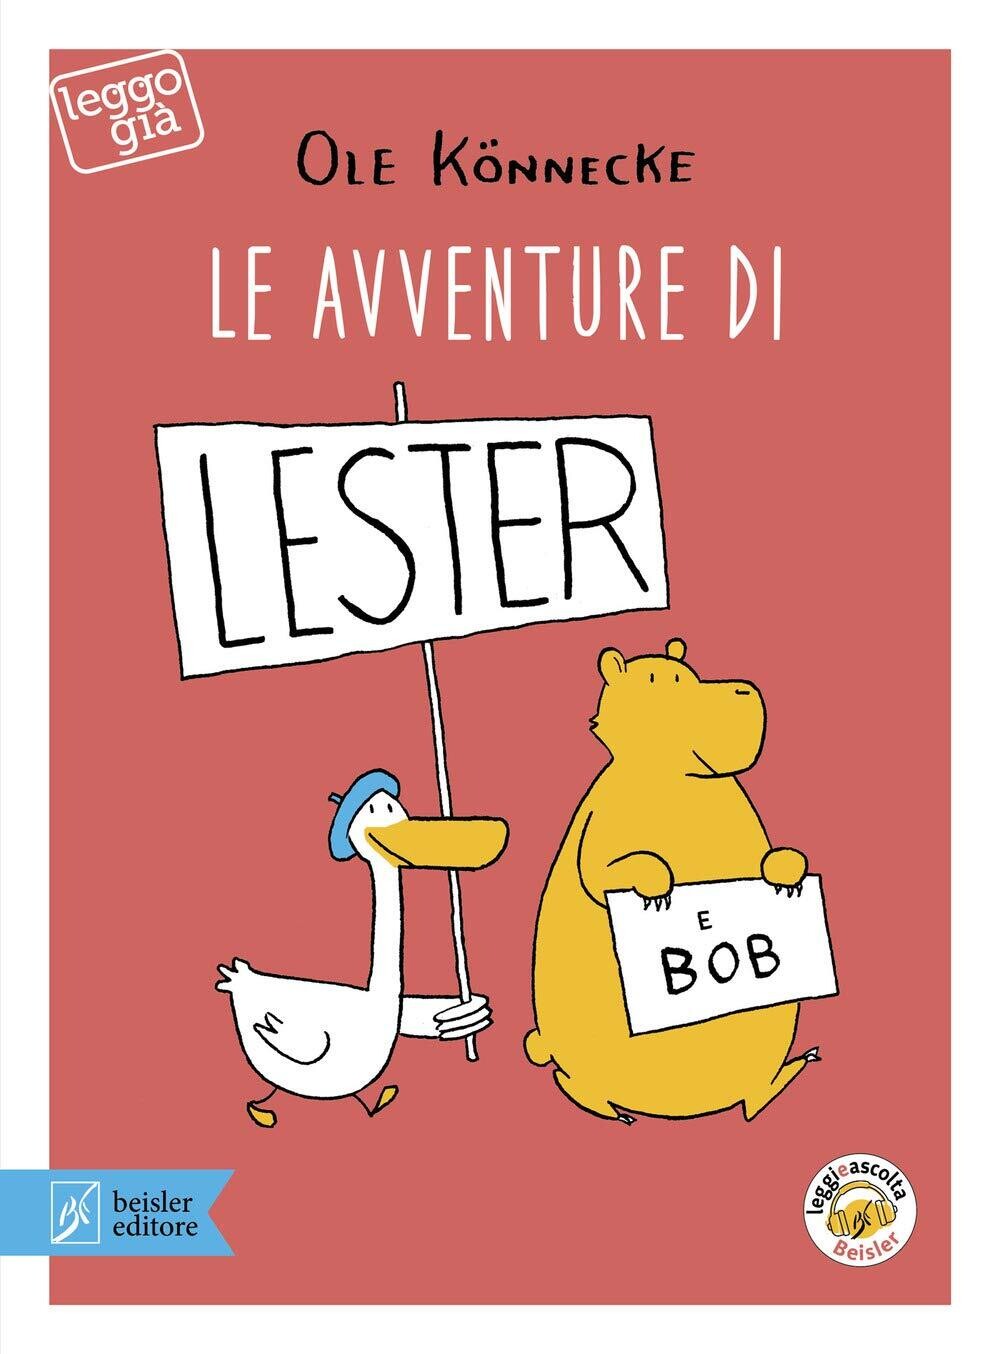 Le avventure di Lester e Bob